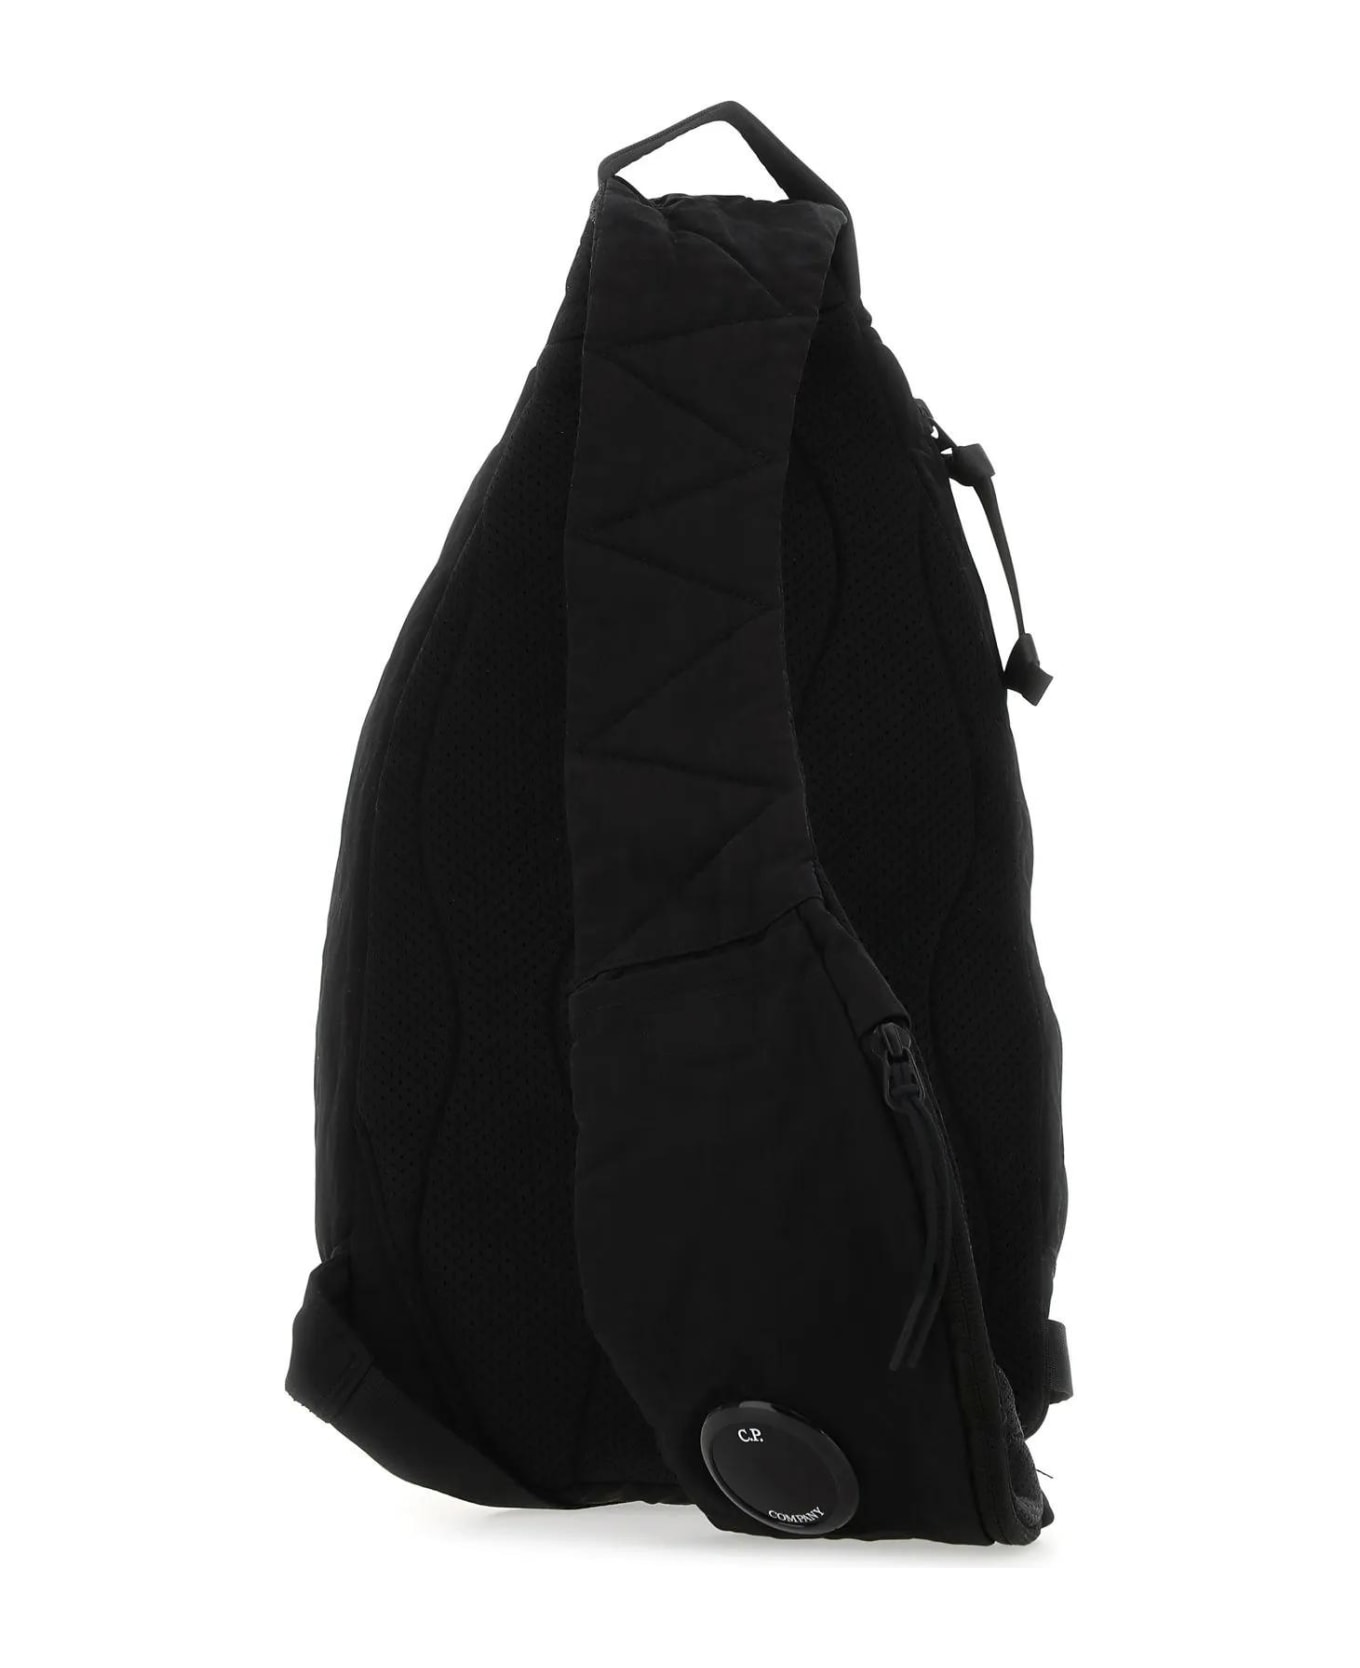 C.P. Company Black Nylon Nylon B Crossbody Bag - Black バックパック